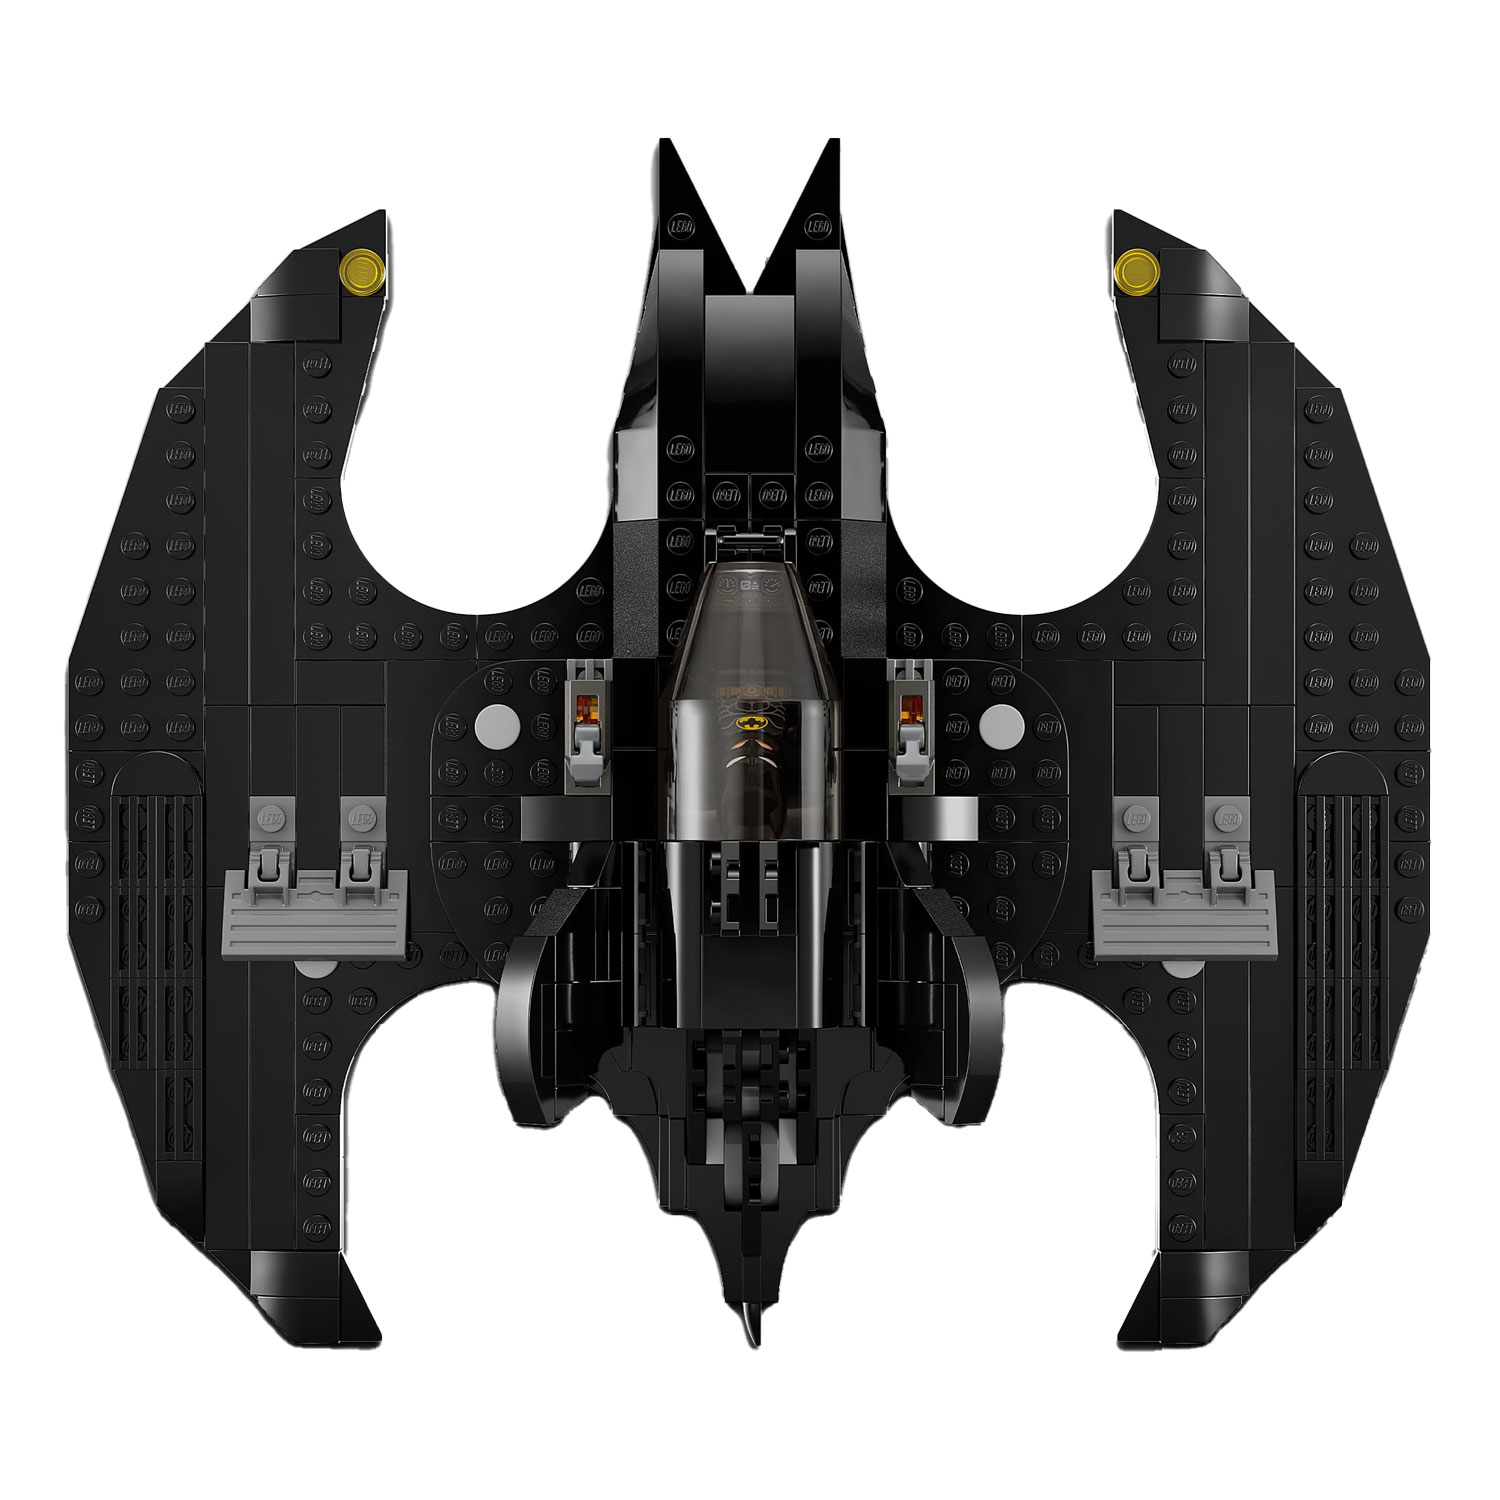 76265 LEGO Super Heroes Batwing : Batman contre. Le Joker